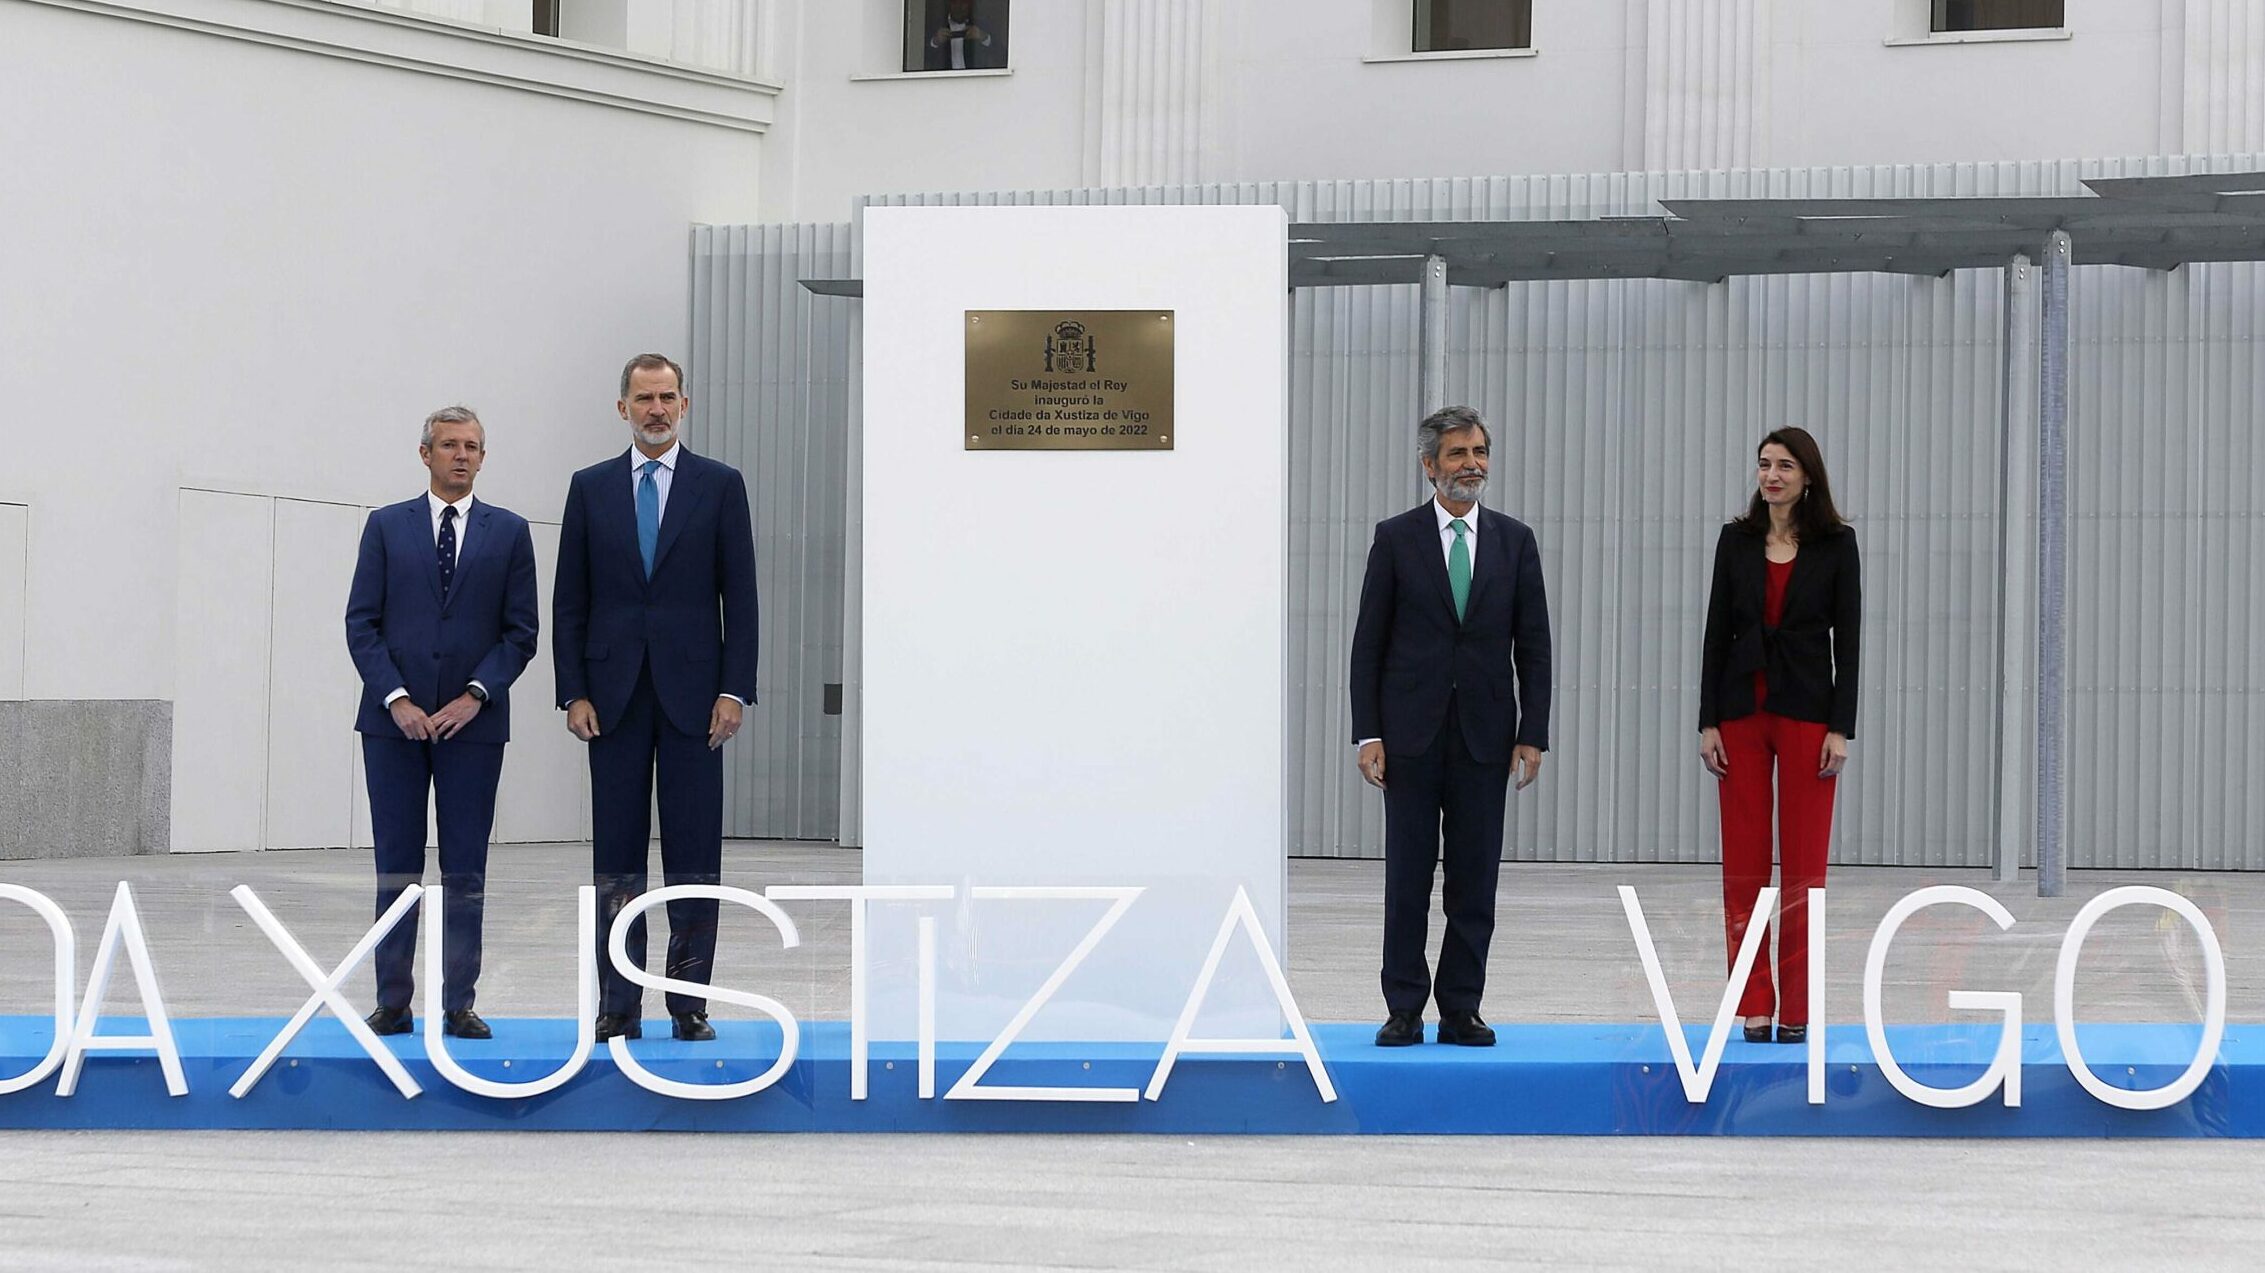 El rey Felipe VI, junto al presidente de la Xunta, Alfonso Rueda; el presidente del CGPJ, Carlos Lesmes; y la ministra de Justicia, Pilar Llop, junto a la placa conmemorativa con motivo de la inauguración de la Ciudad de la Justicia de Vigo.